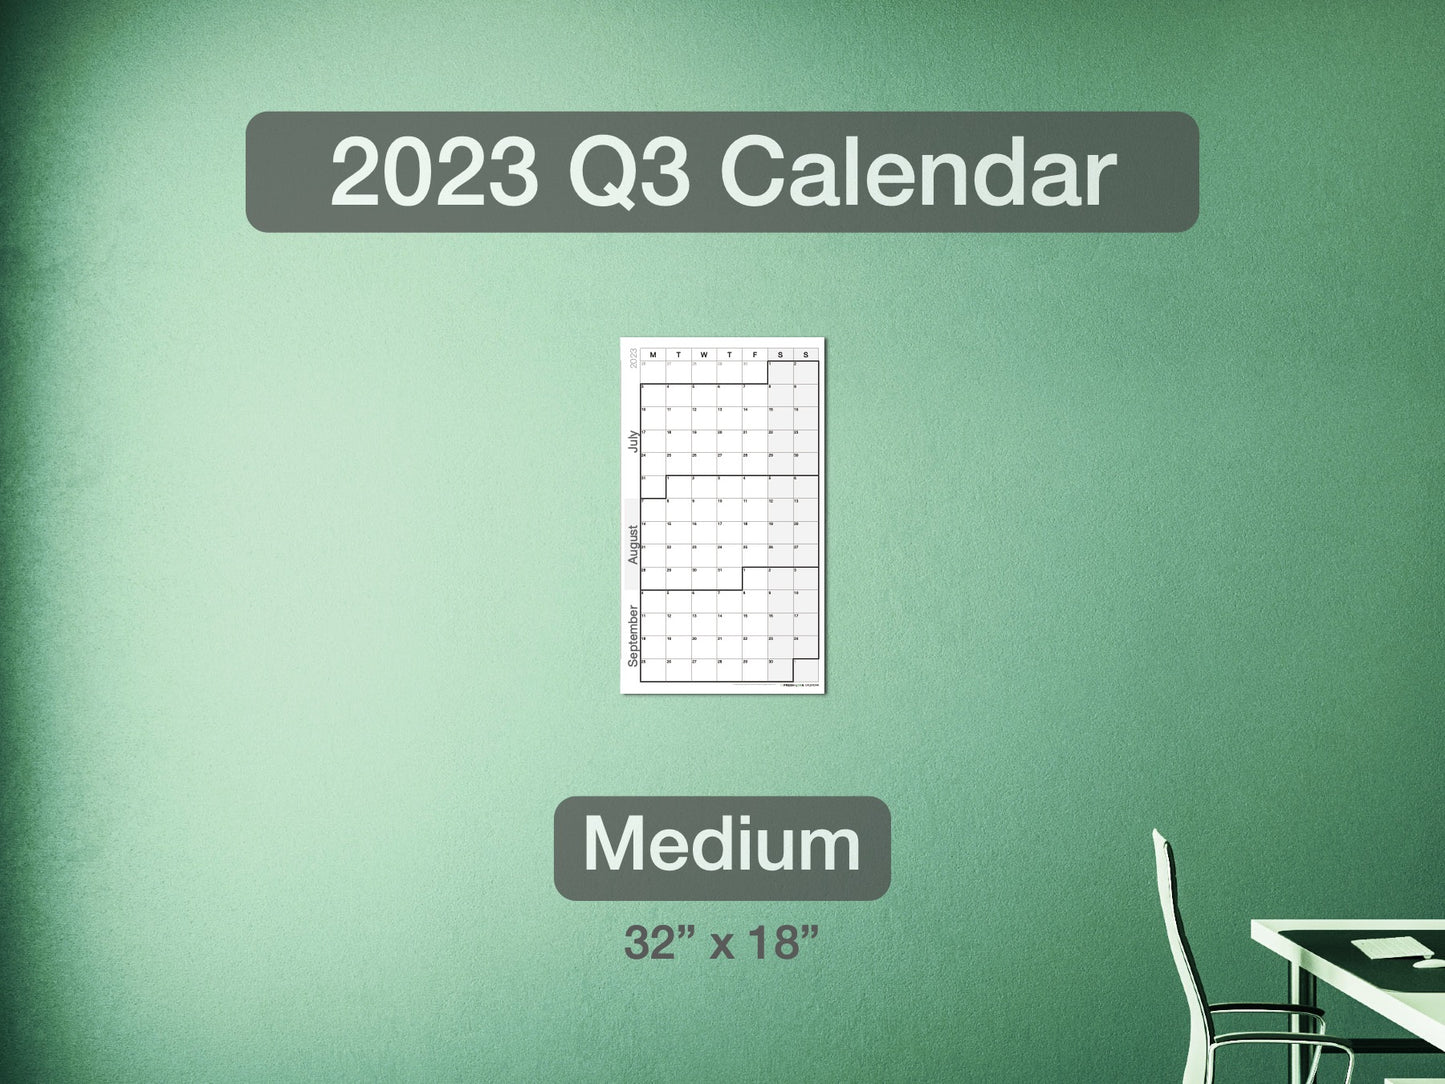 2023 Q3 Calendar Medium